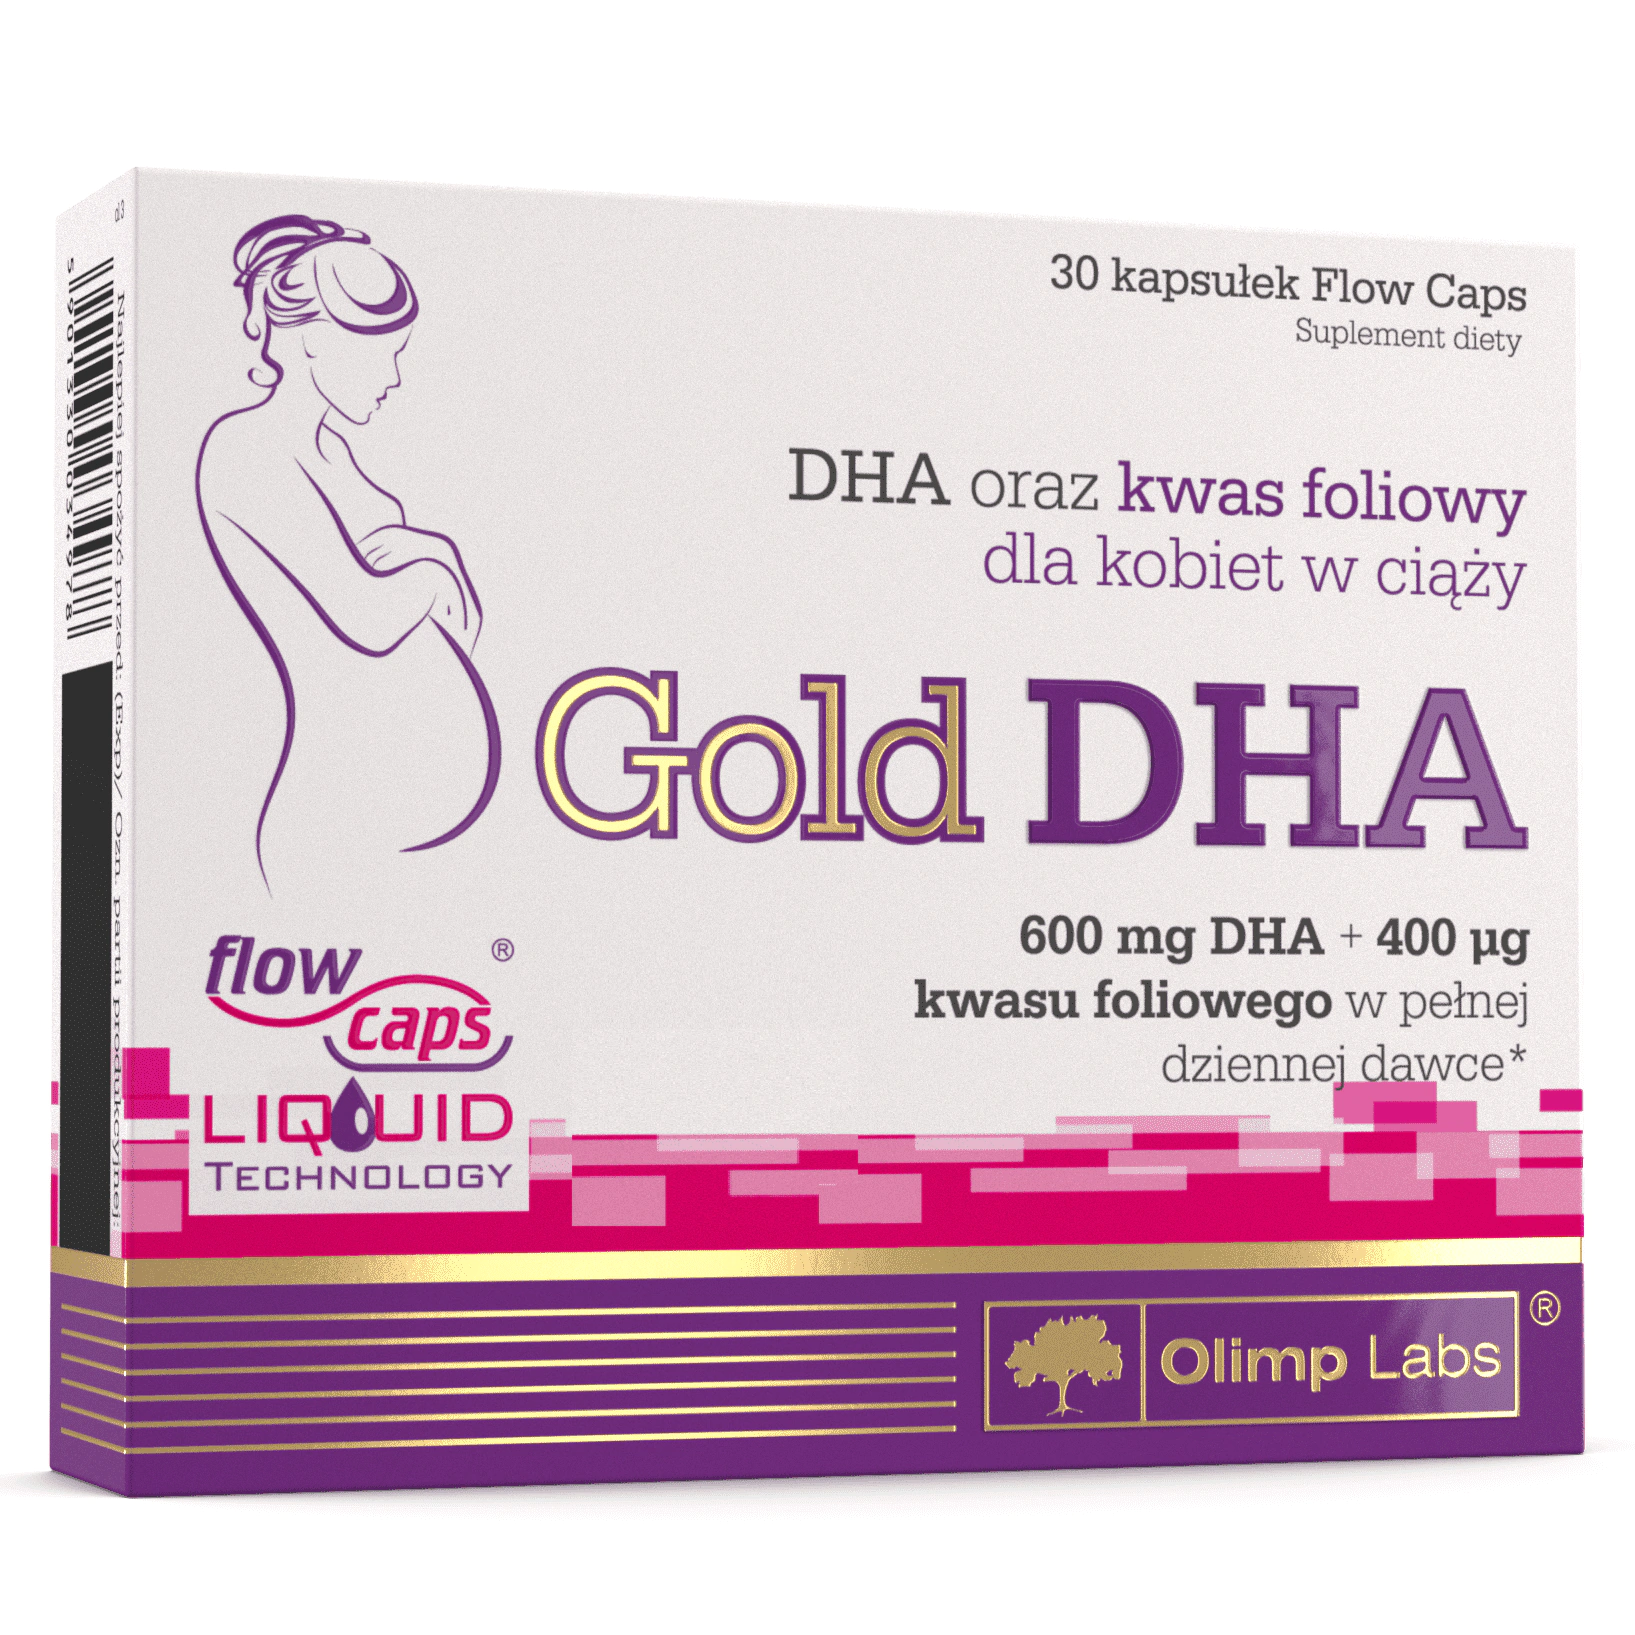 Olimp Gold-DHA, DHA w ciąży i podczas laktacji, witaminy prenatalne, Matka Aptekarka